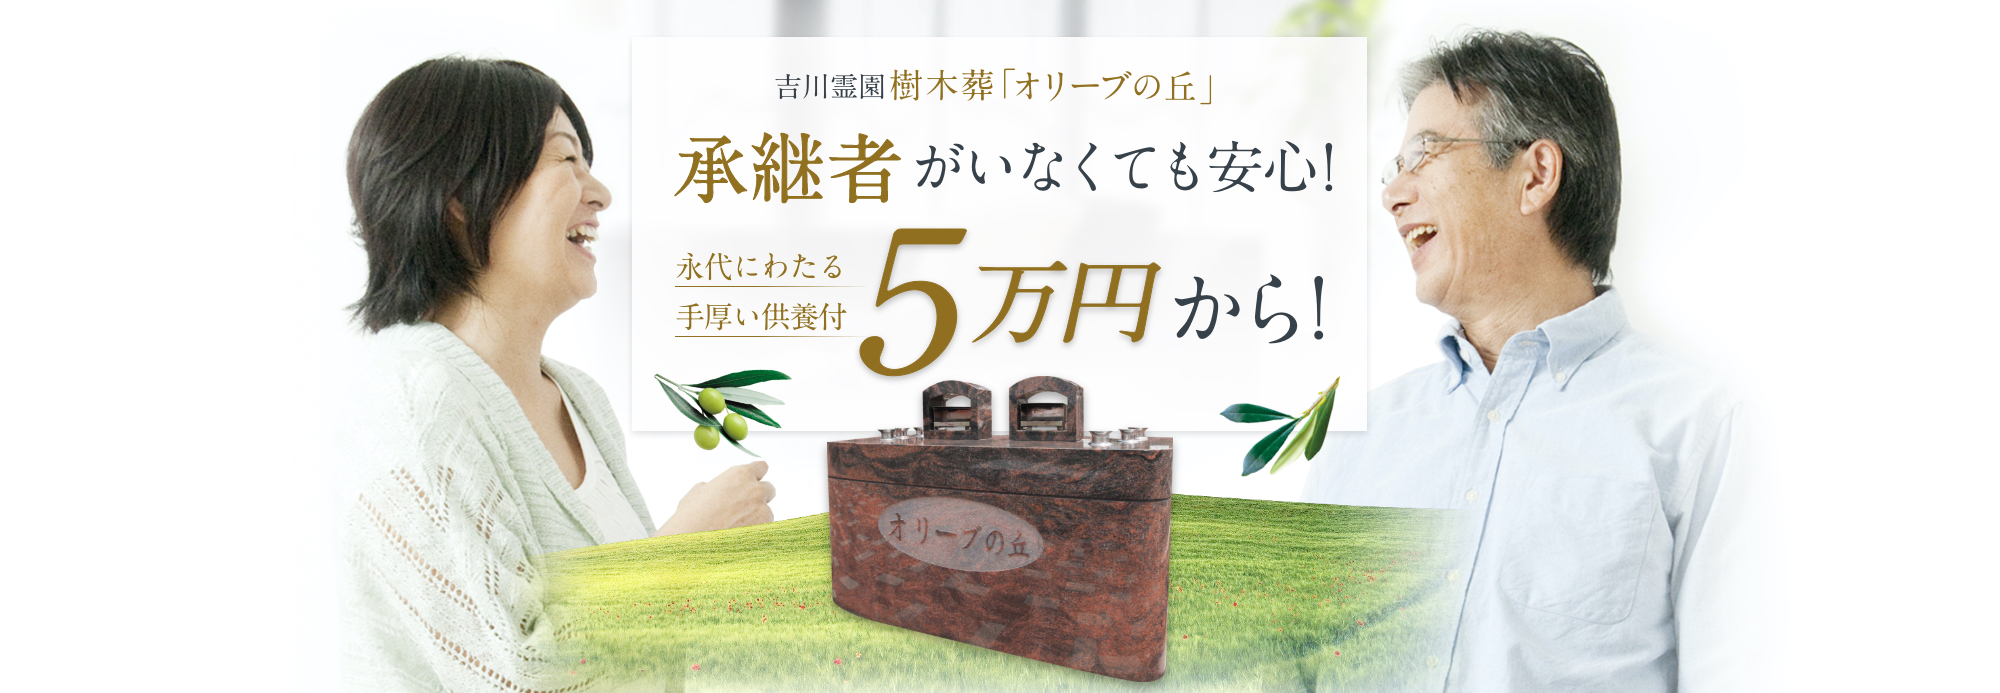 吉川霊園樹木葬「オリーブの丘」承継者がいなくても安心!永代にわたる手厚い供養付きで5万円から!